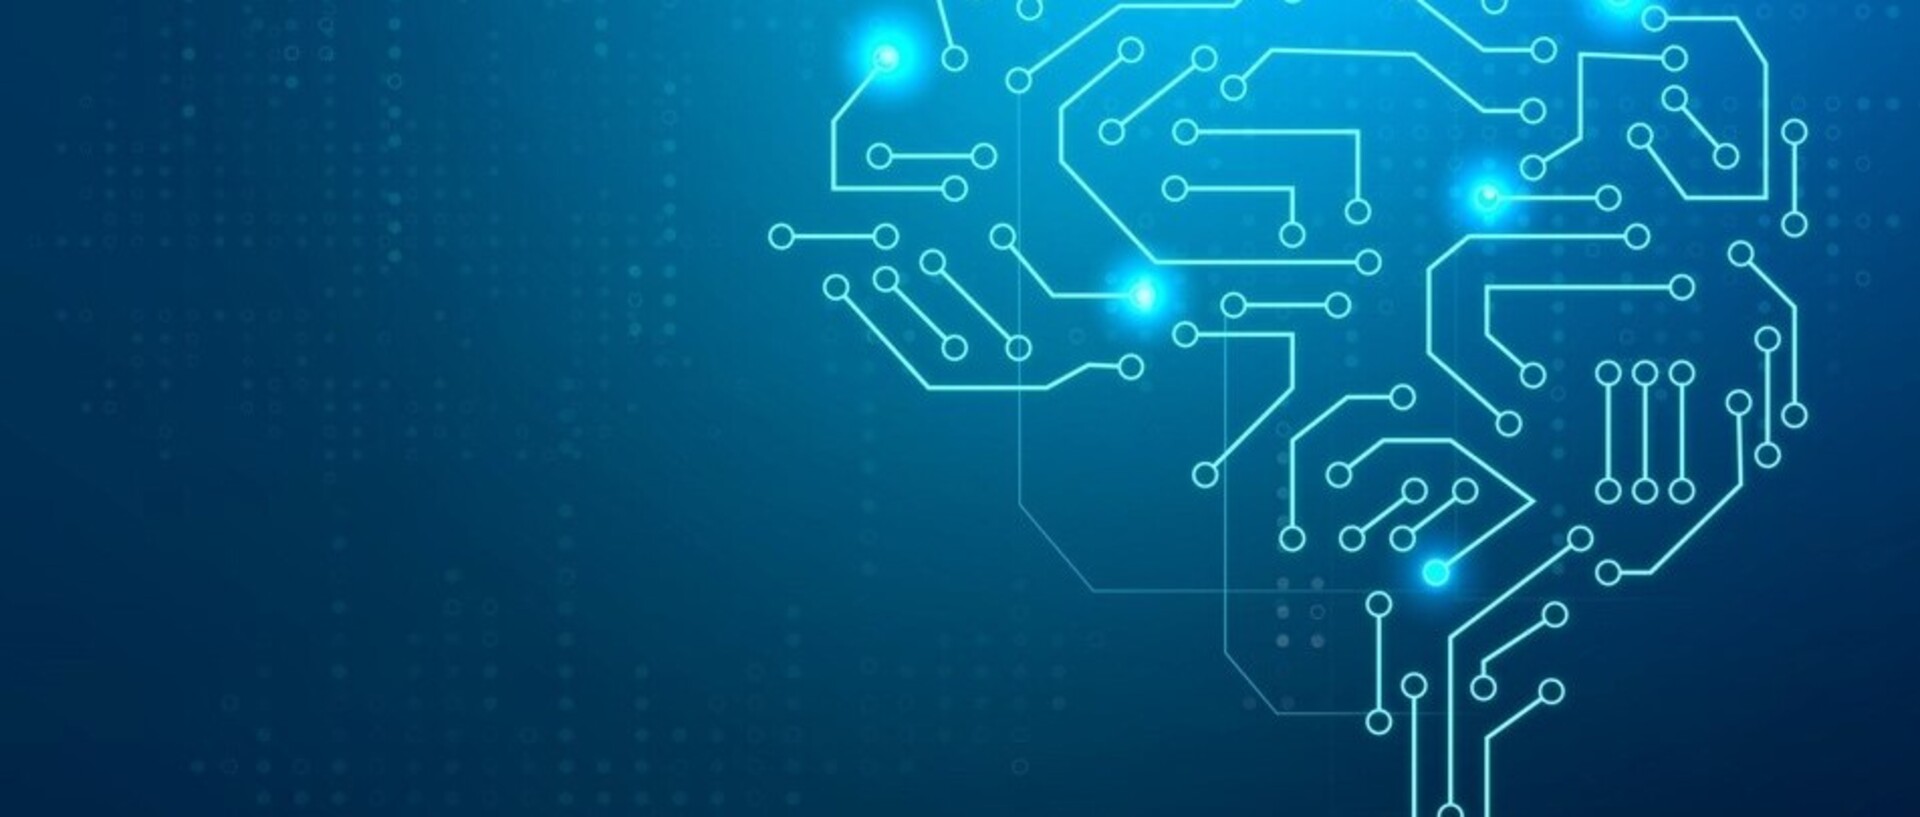 Logo der Jahrestagung: Auf blauem Hintergrund sieht man ein elektronisches Gehirn aus künstlichen neuronalen Netzen ohne den Schriftzug "Künstliche Intelligenz und Versicherung"